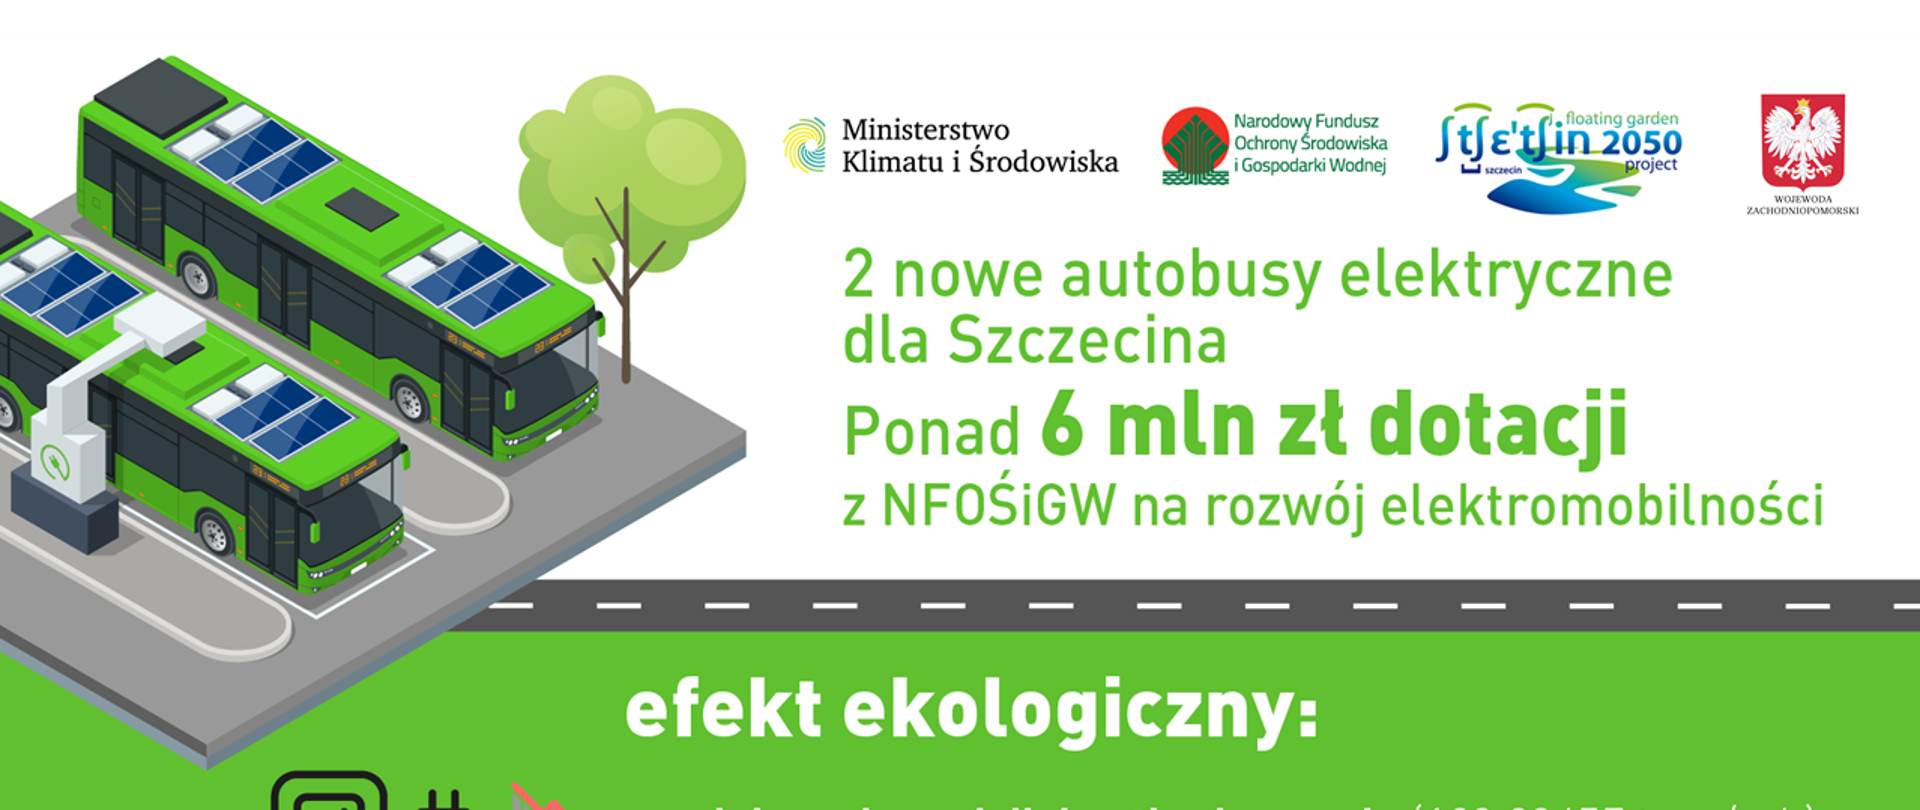 Zdjęcie do artykułu Autobusy elektryczne dla Szczecina. Miasto otrzyma ponad 6 mln zł dotacji z NFOŚiGW na rozwój elektromobilności